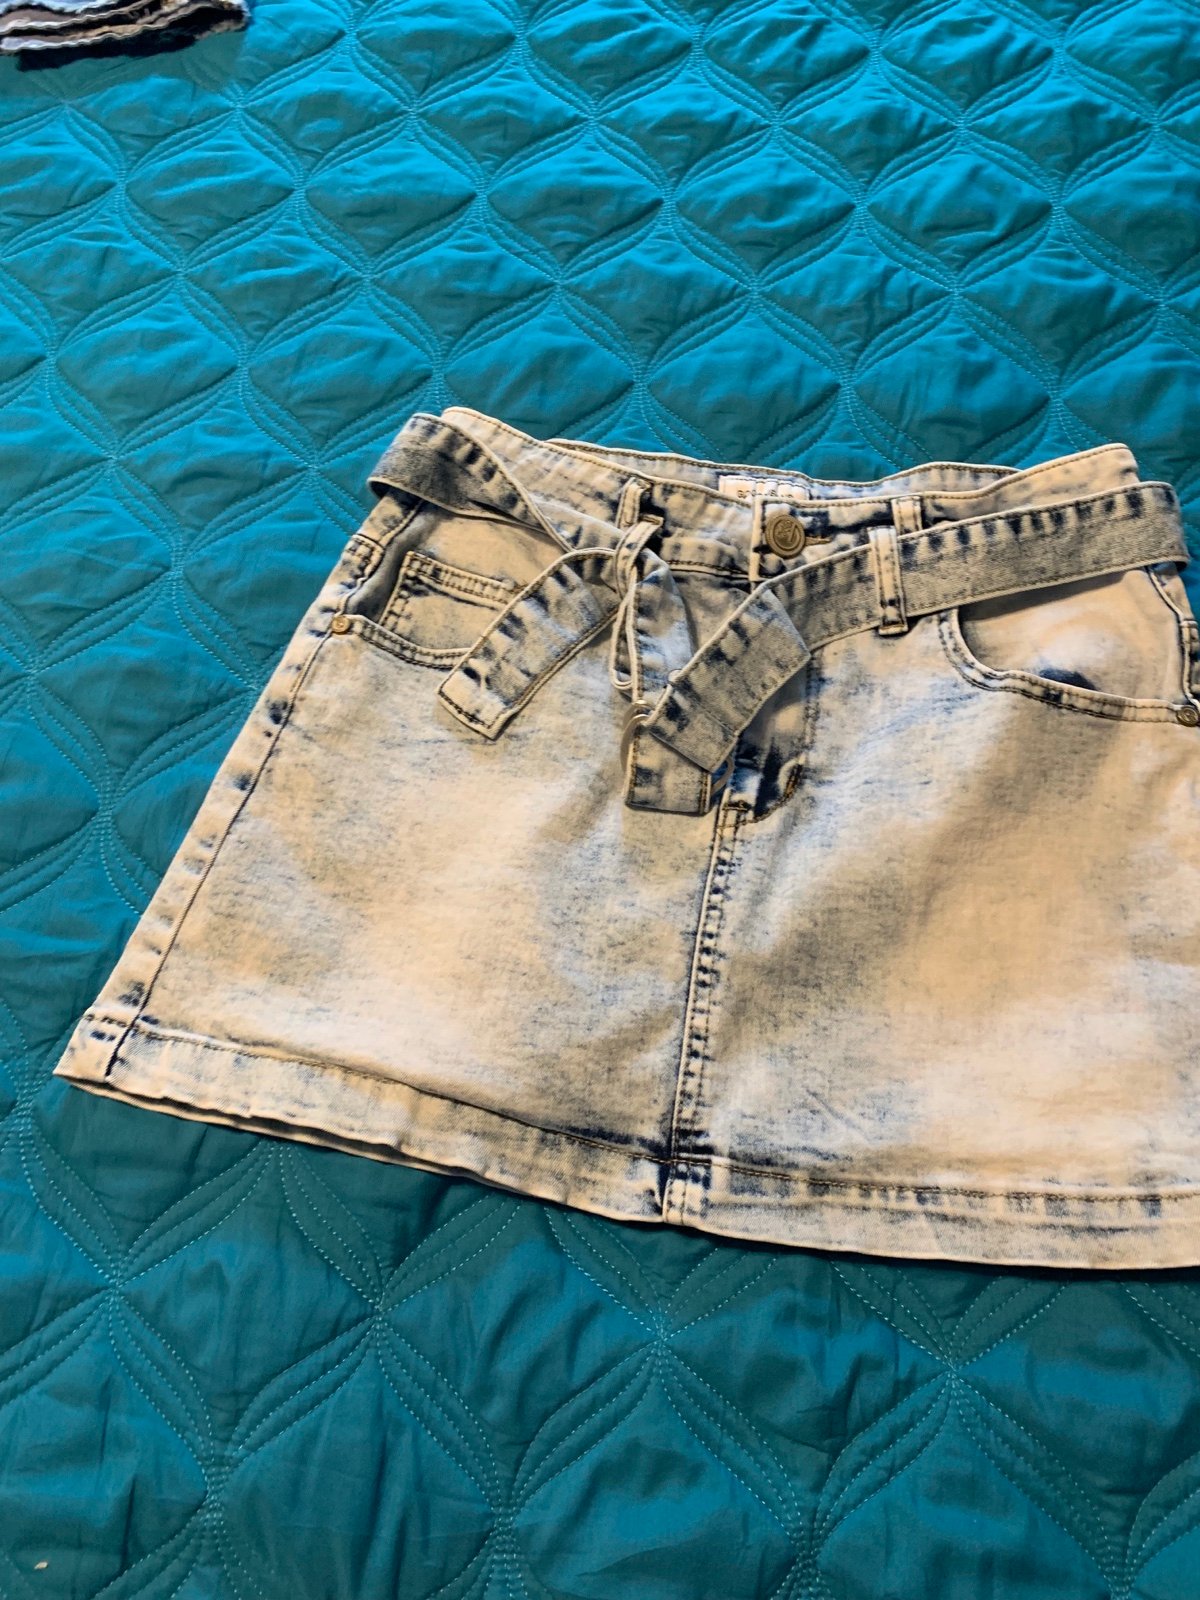 Discounted Denim Skirt Gogo Jeans sz 7/28 iQrToXI8Q Che